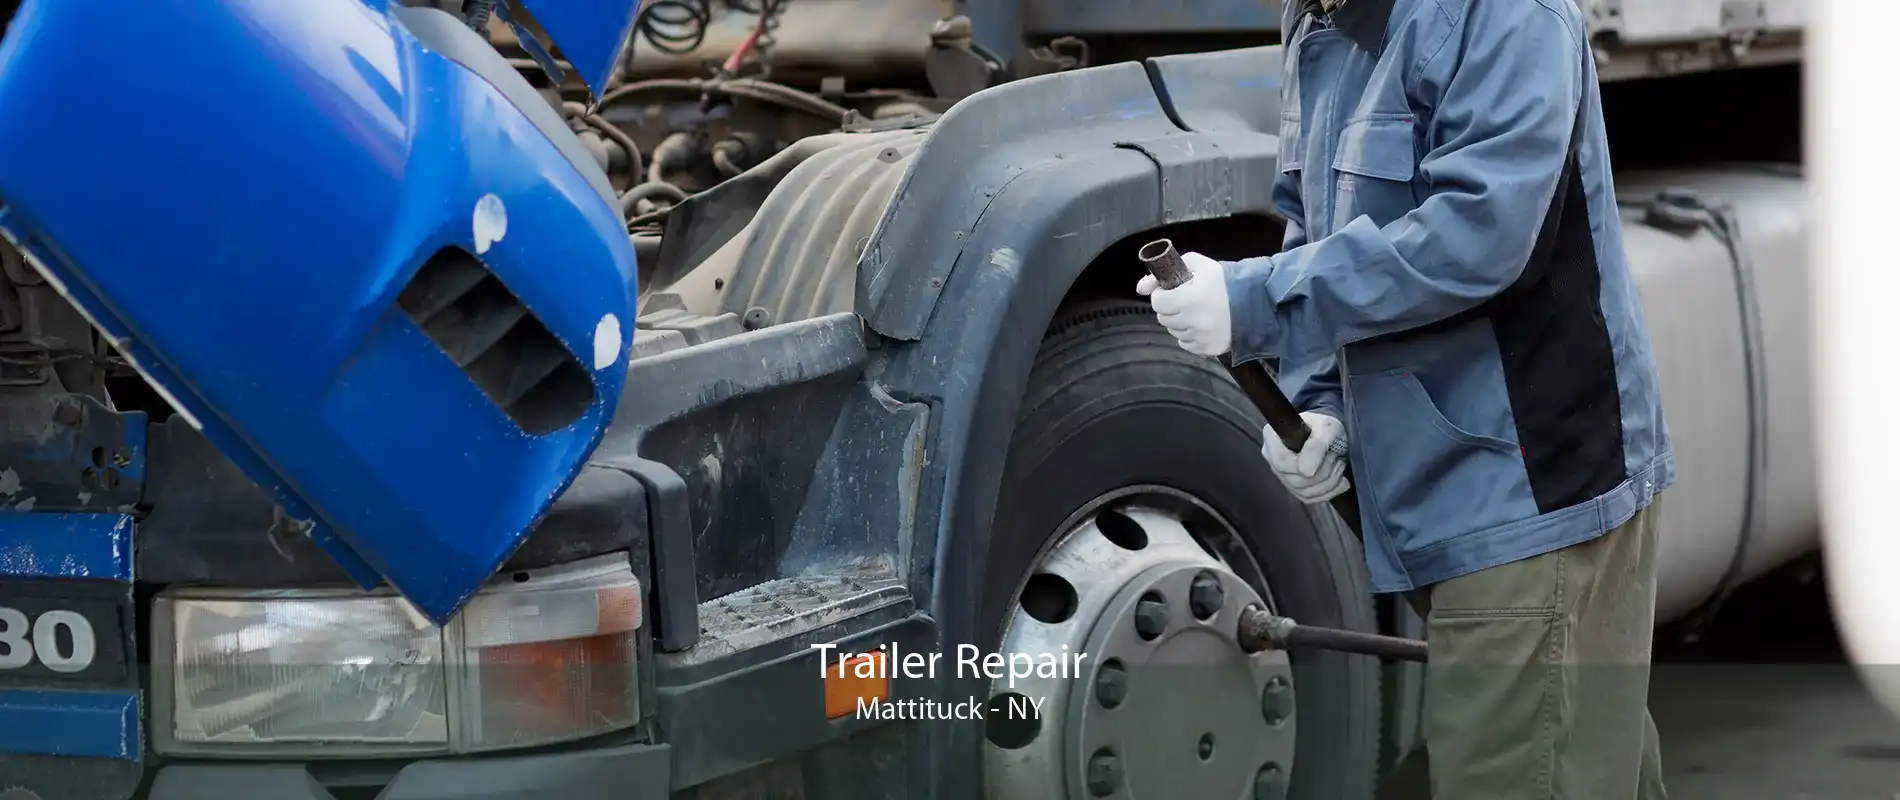 Trailer Repair Mattituck - NY